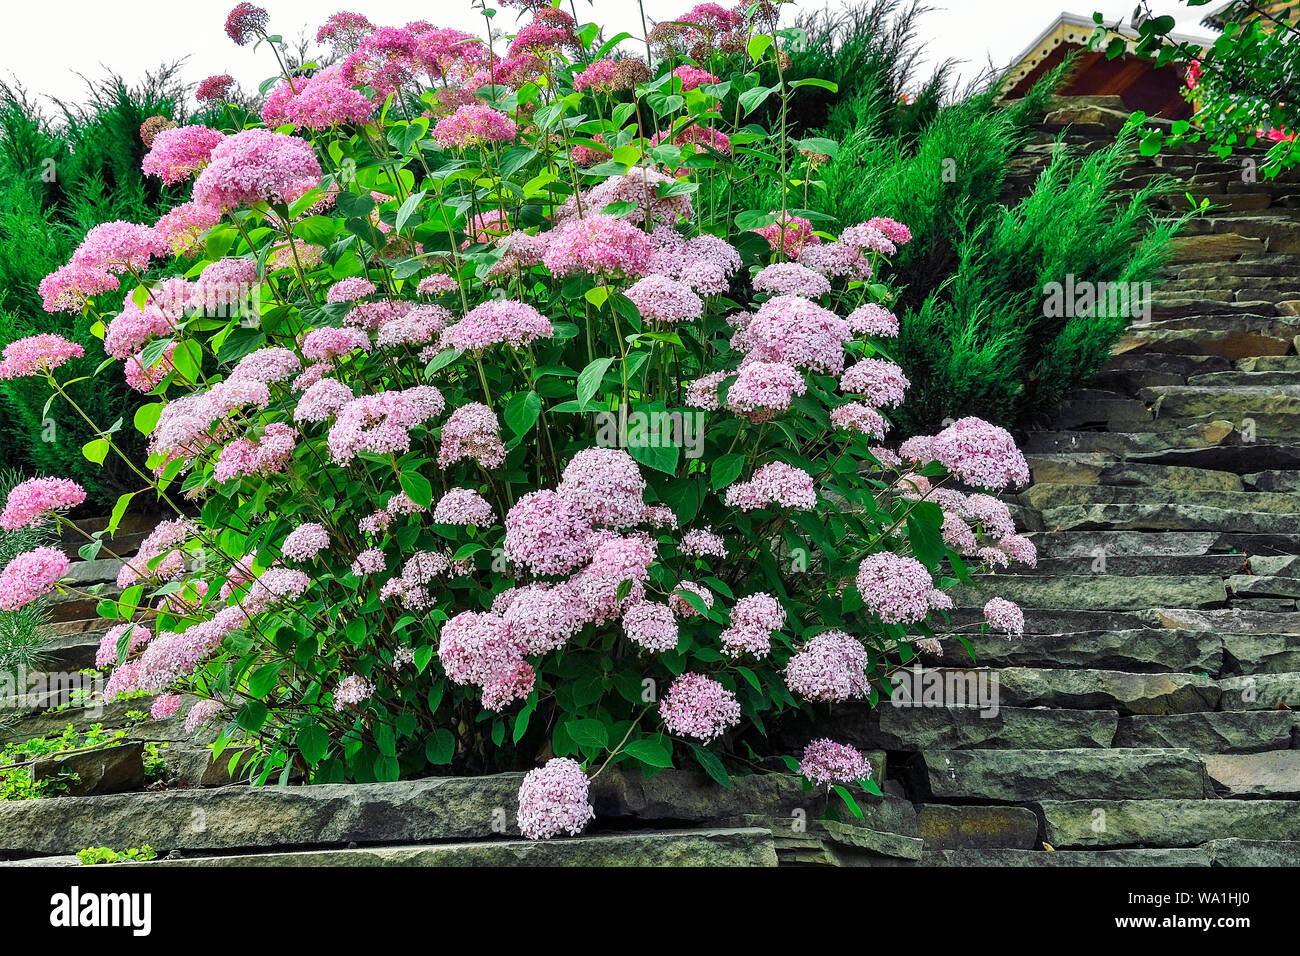 Bush der zarte Blüte pink hydrangea in alpinen Gartens. Rosa Blüten von Hydrangea macrophylla oder Hortensia in steinigen Garten. Blühende Pflanze in La Stockfoto